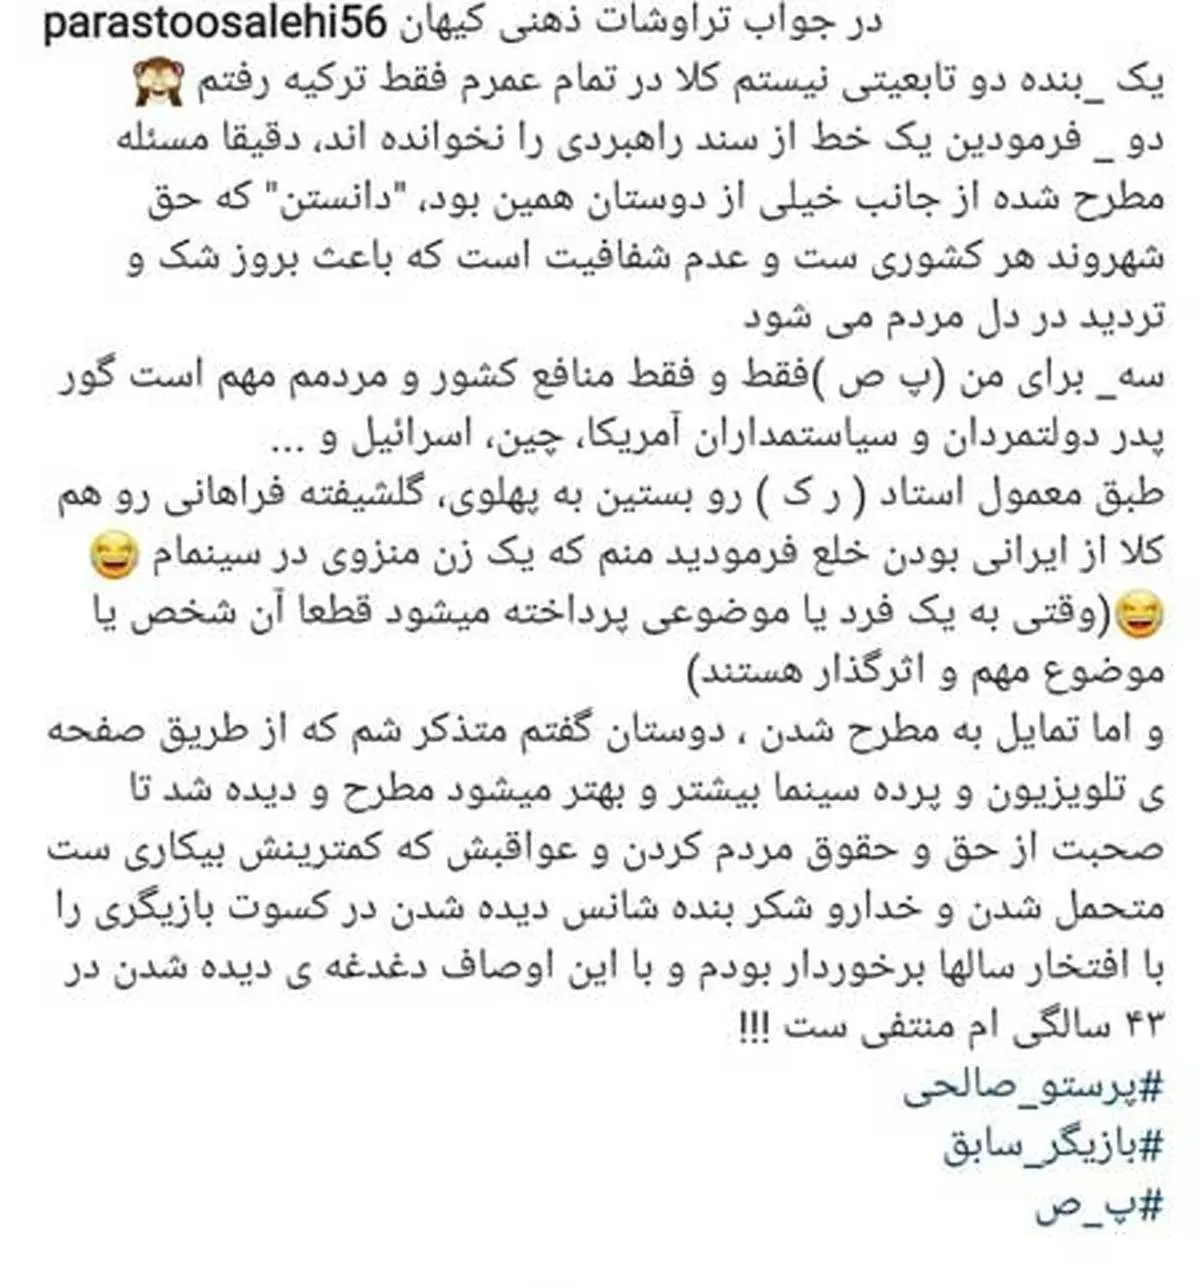 پست اینستاگرامی پرستو صالحی در جواب روزنامه کیهان